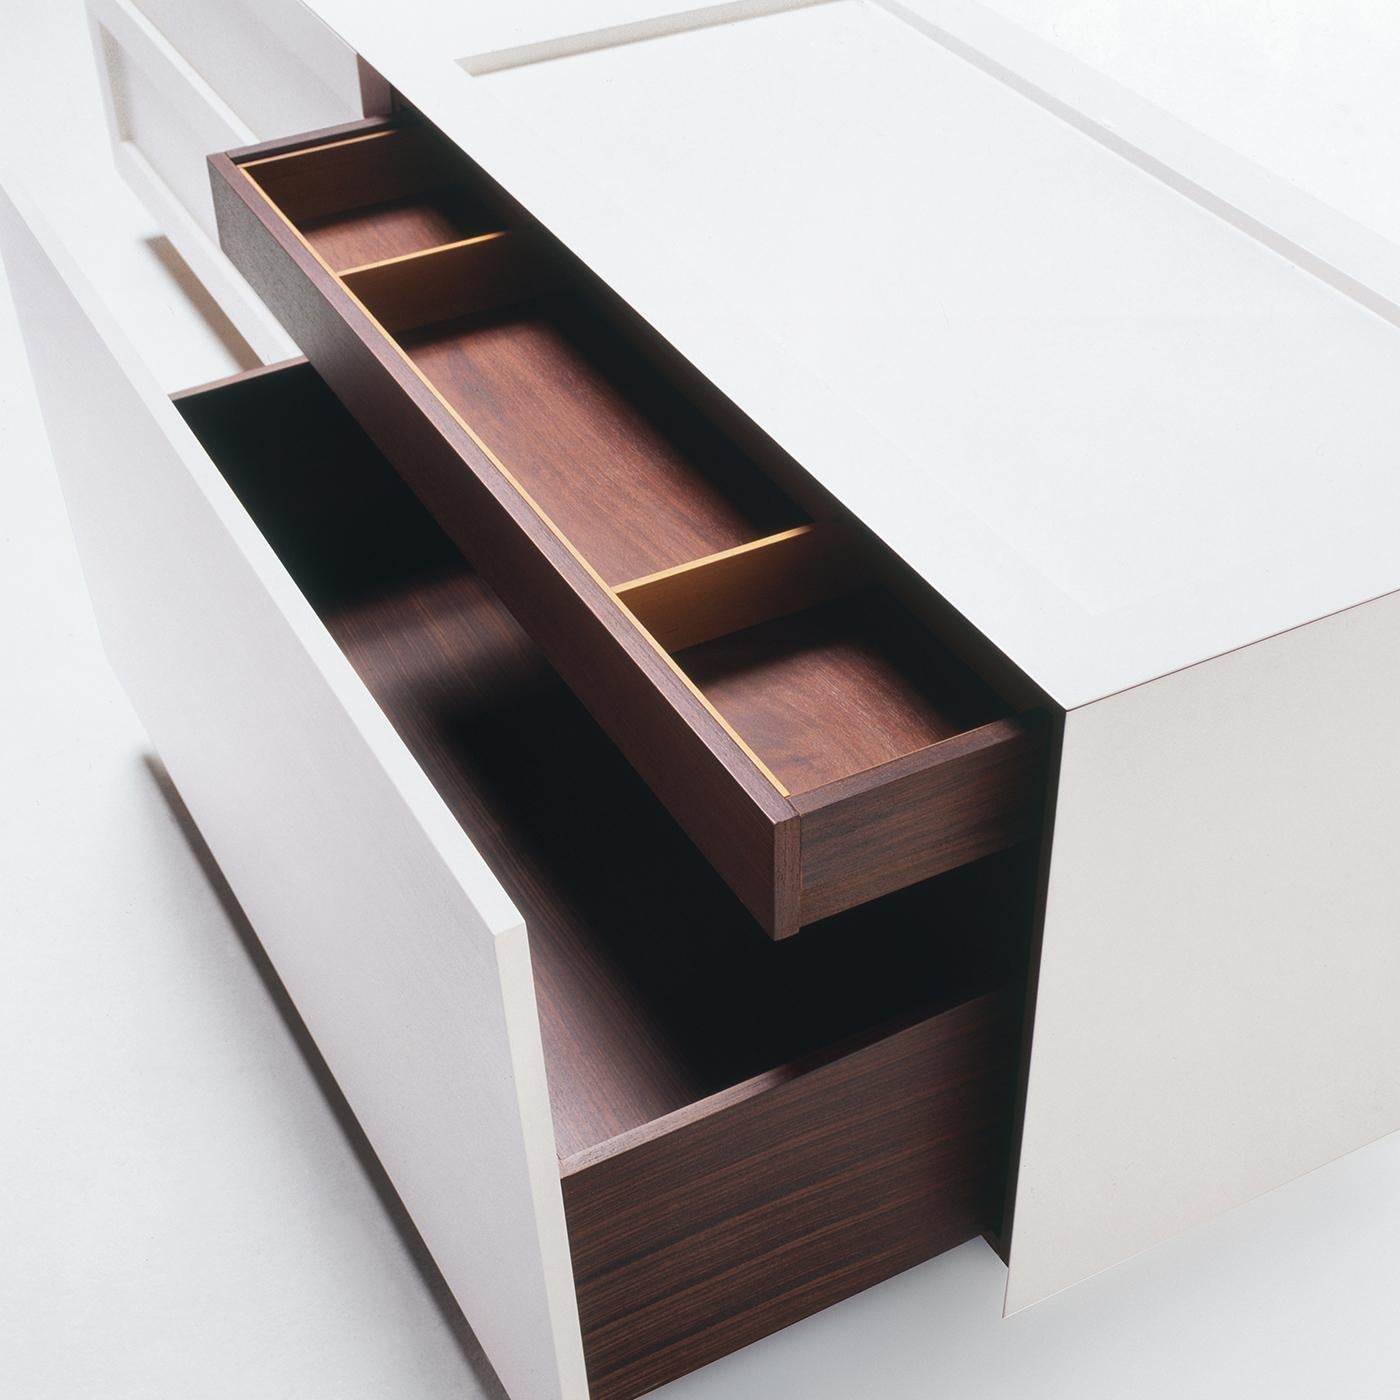 Ce buffet horizontal en bois comporte deux tiroirs extérieurs et une commode intégrée avec un tiroir intérieur. Il est disponible dans un large éventail de finitions sur demande afin de s'intégrer à tout environnement. Très spacieux et pratique, il